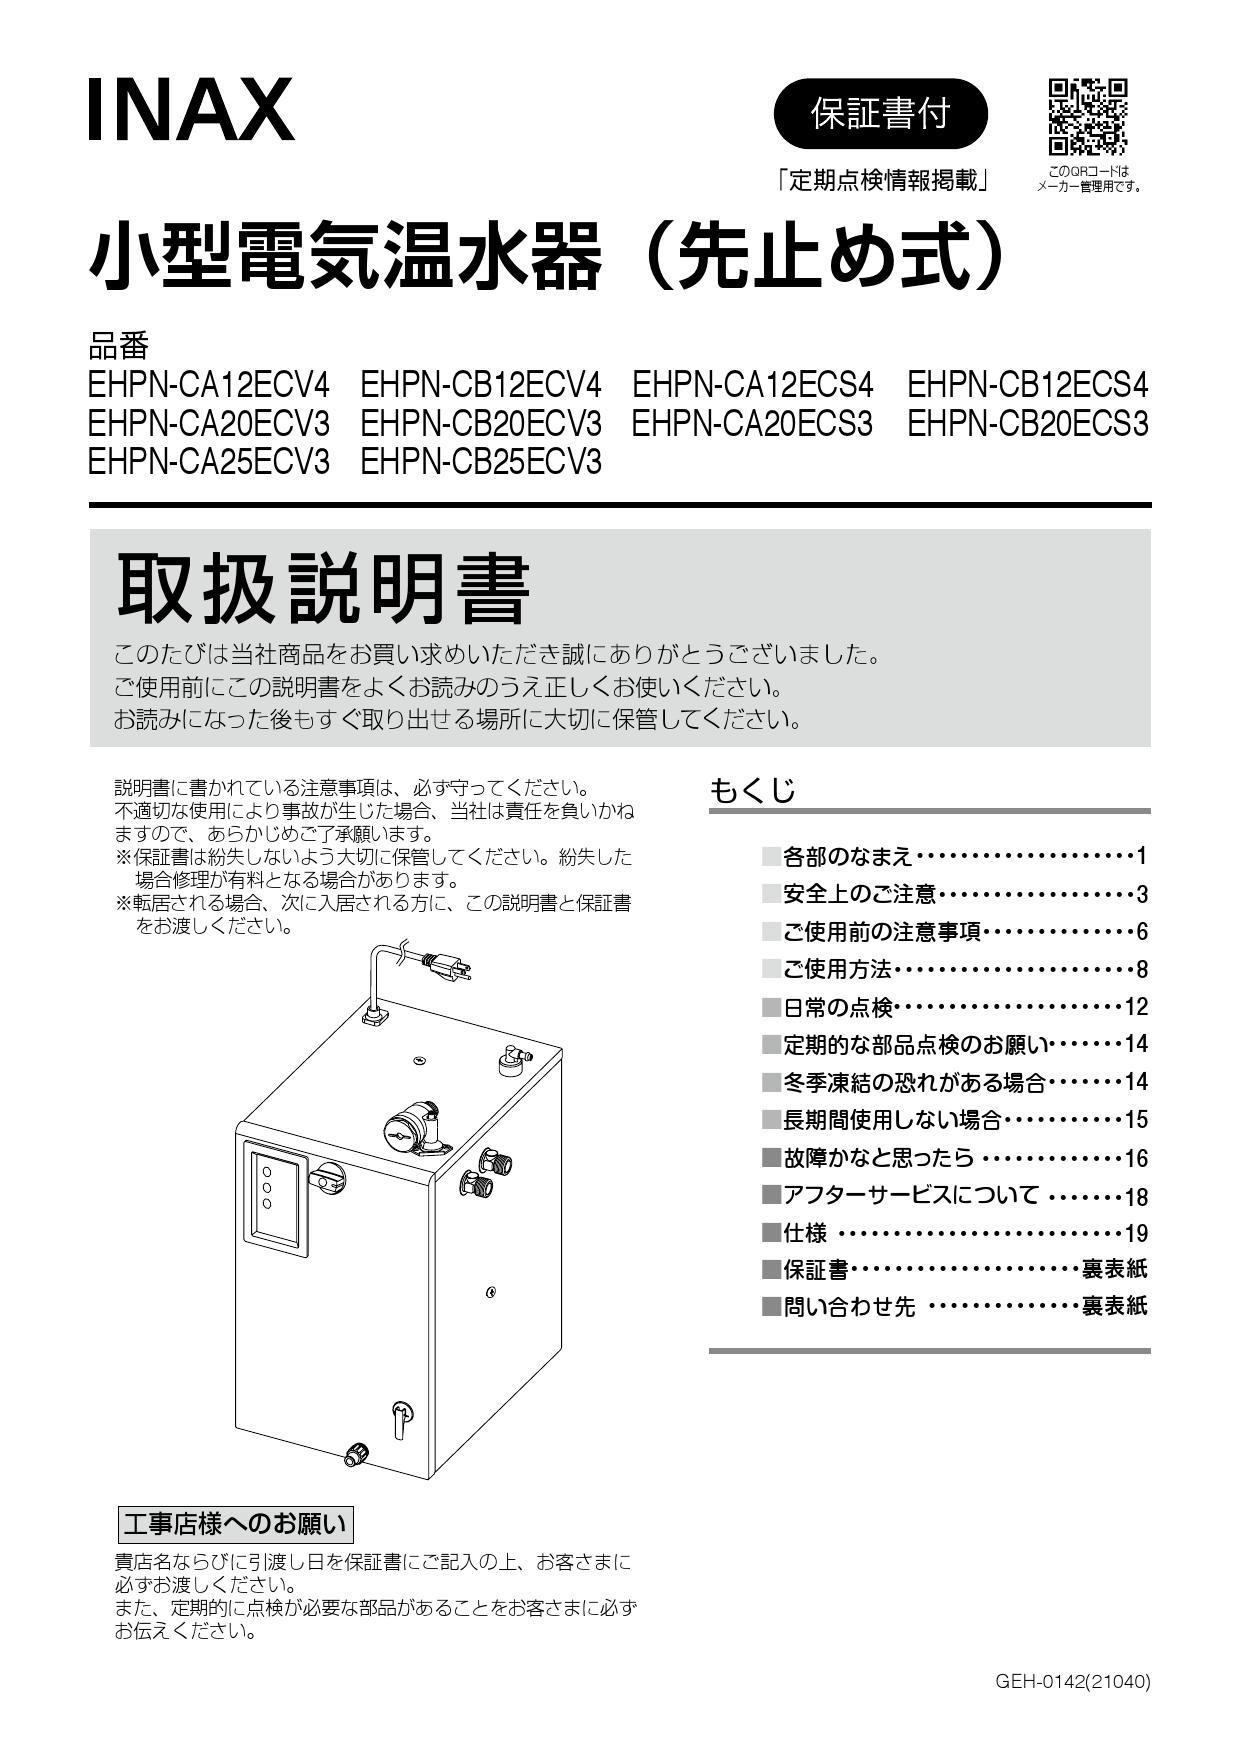 日本全国送料無料 ゆプラス INAX LIXIL EHPS-CA25ECV3 出湯温度可変オートウィークリータイマータイプ 25L (EHPN-CA25ECV3  EFH-6 EFH-DA1)セット AC100V [◇]